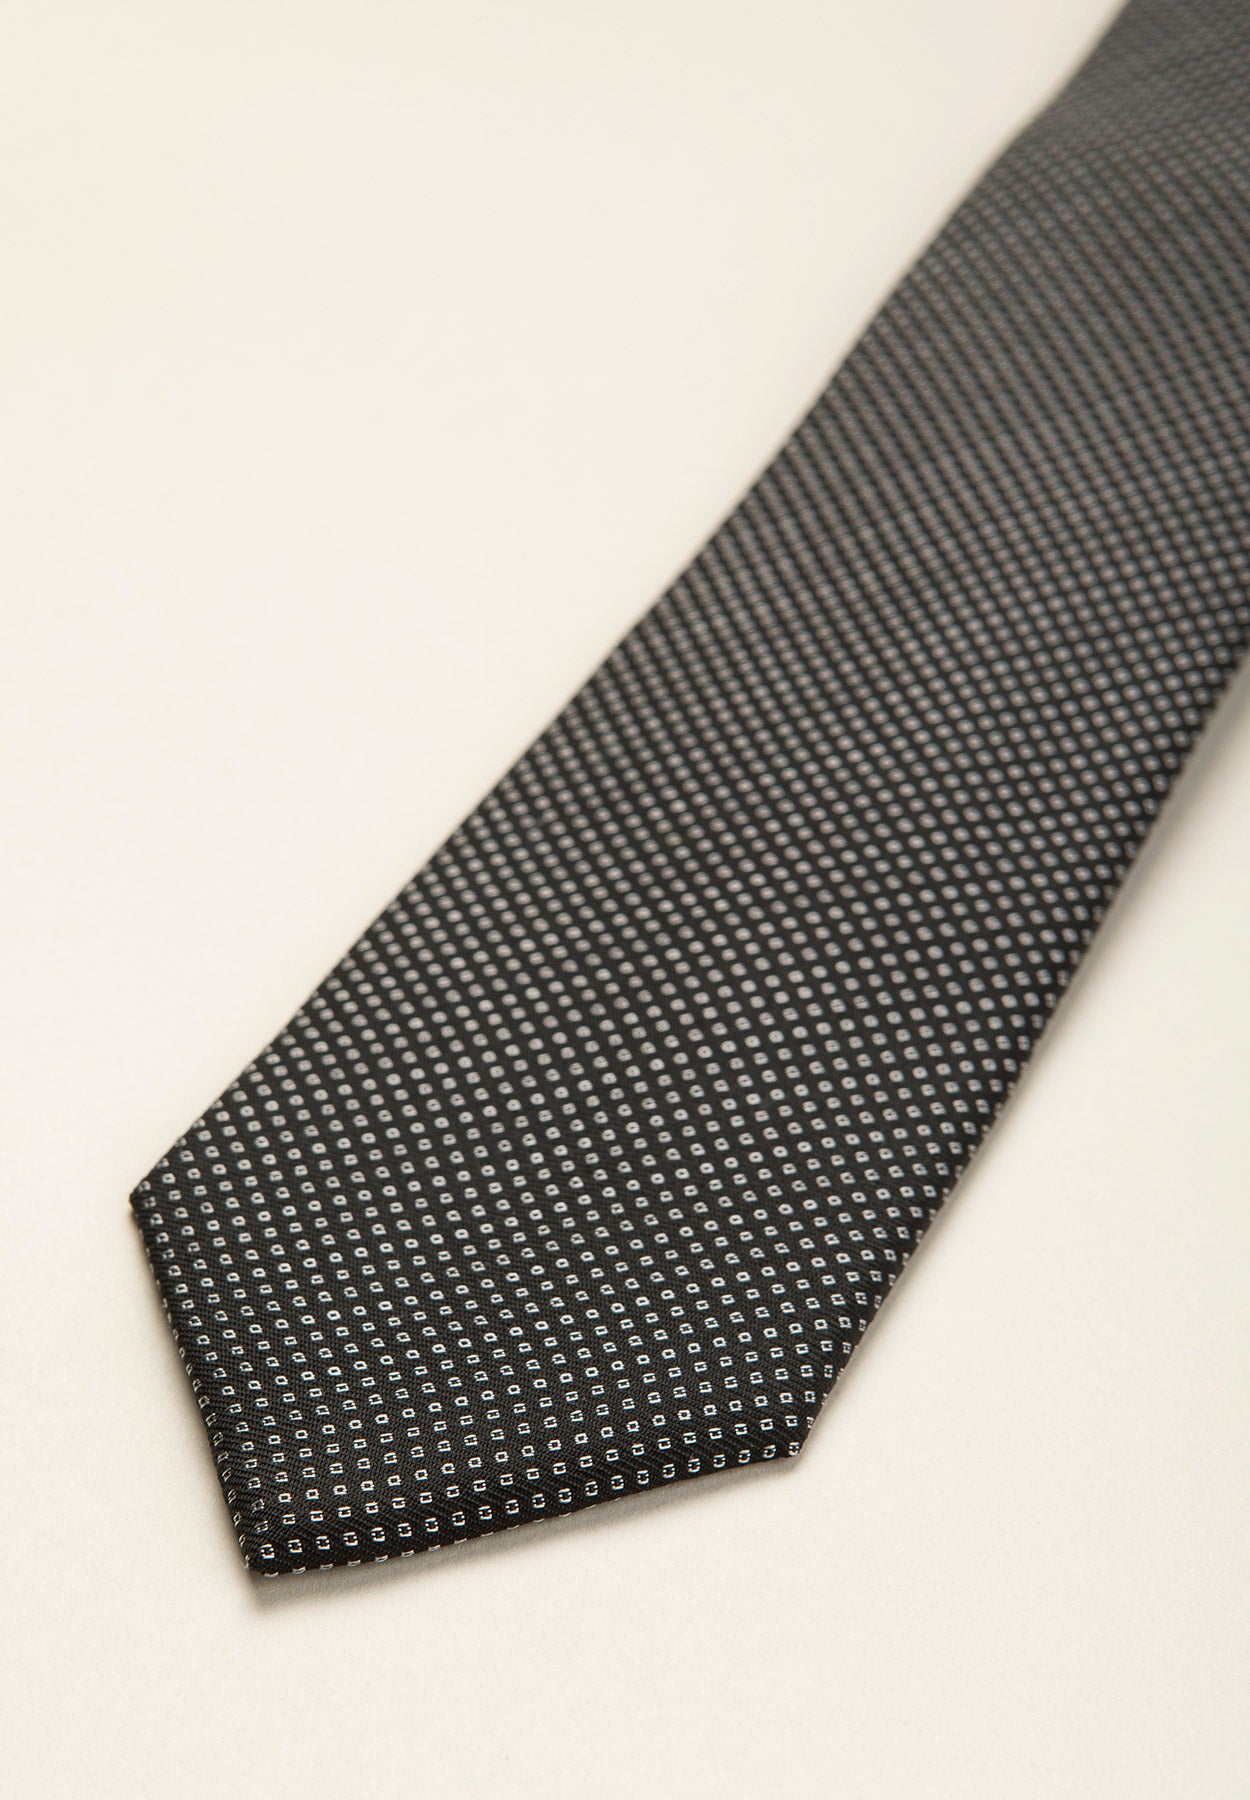 Cravatta nera microdisegno perla seta